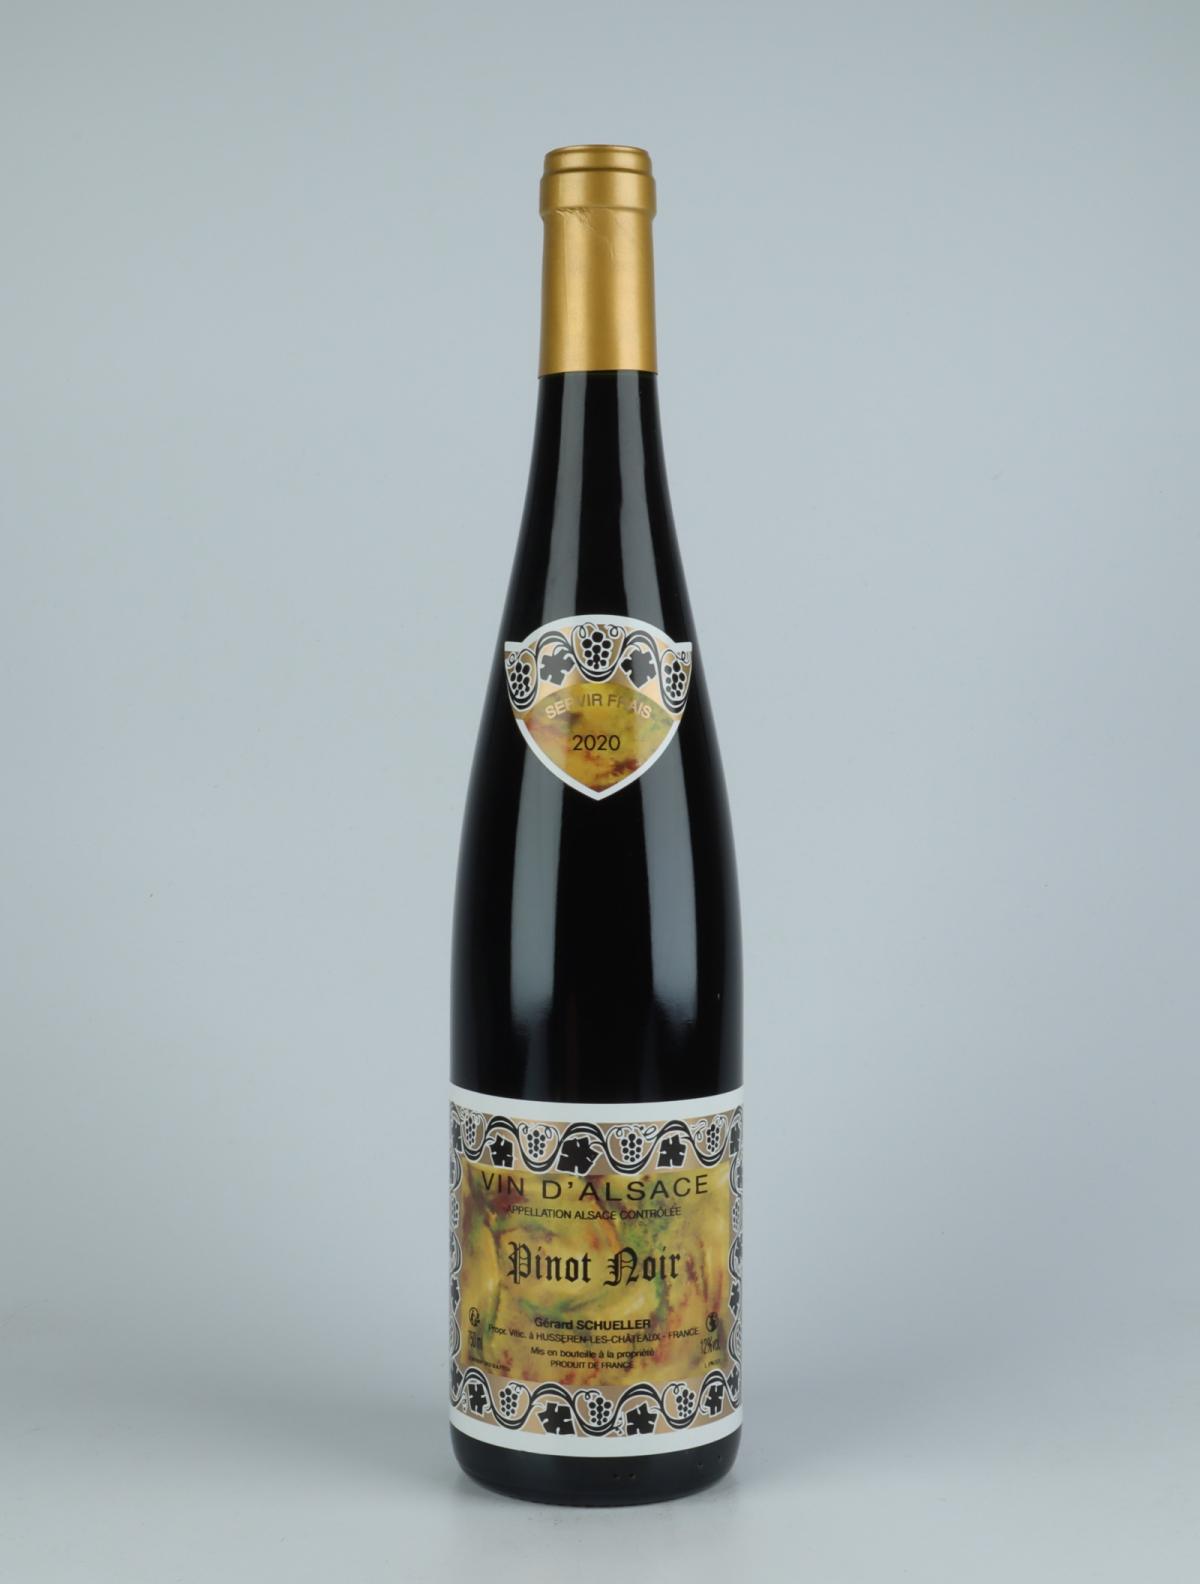 En flaske 2020 Pinot Noir Rødvin fra Gérard Schueller, Alsace i Frankrig